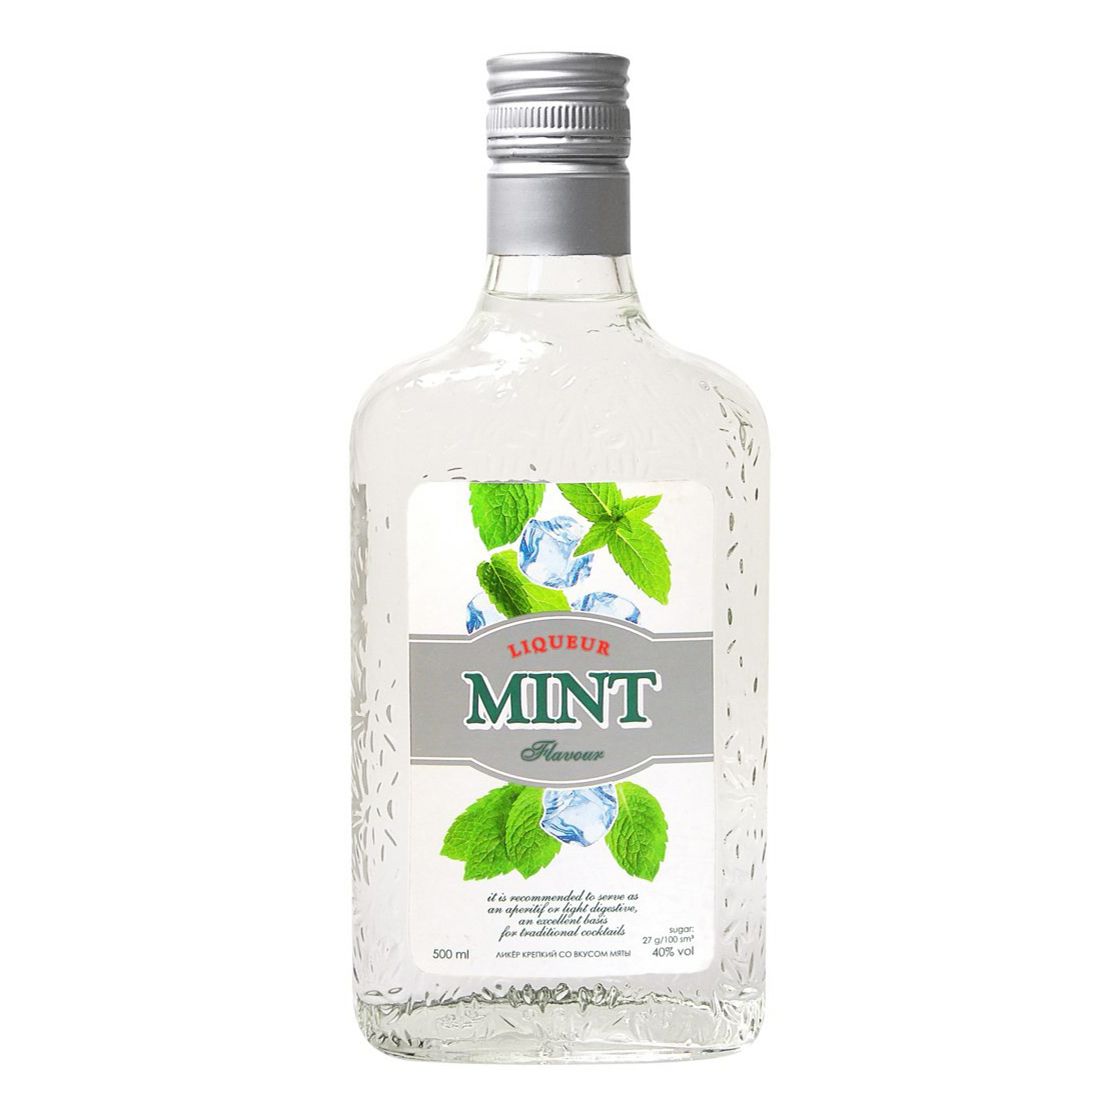 Mint flavour